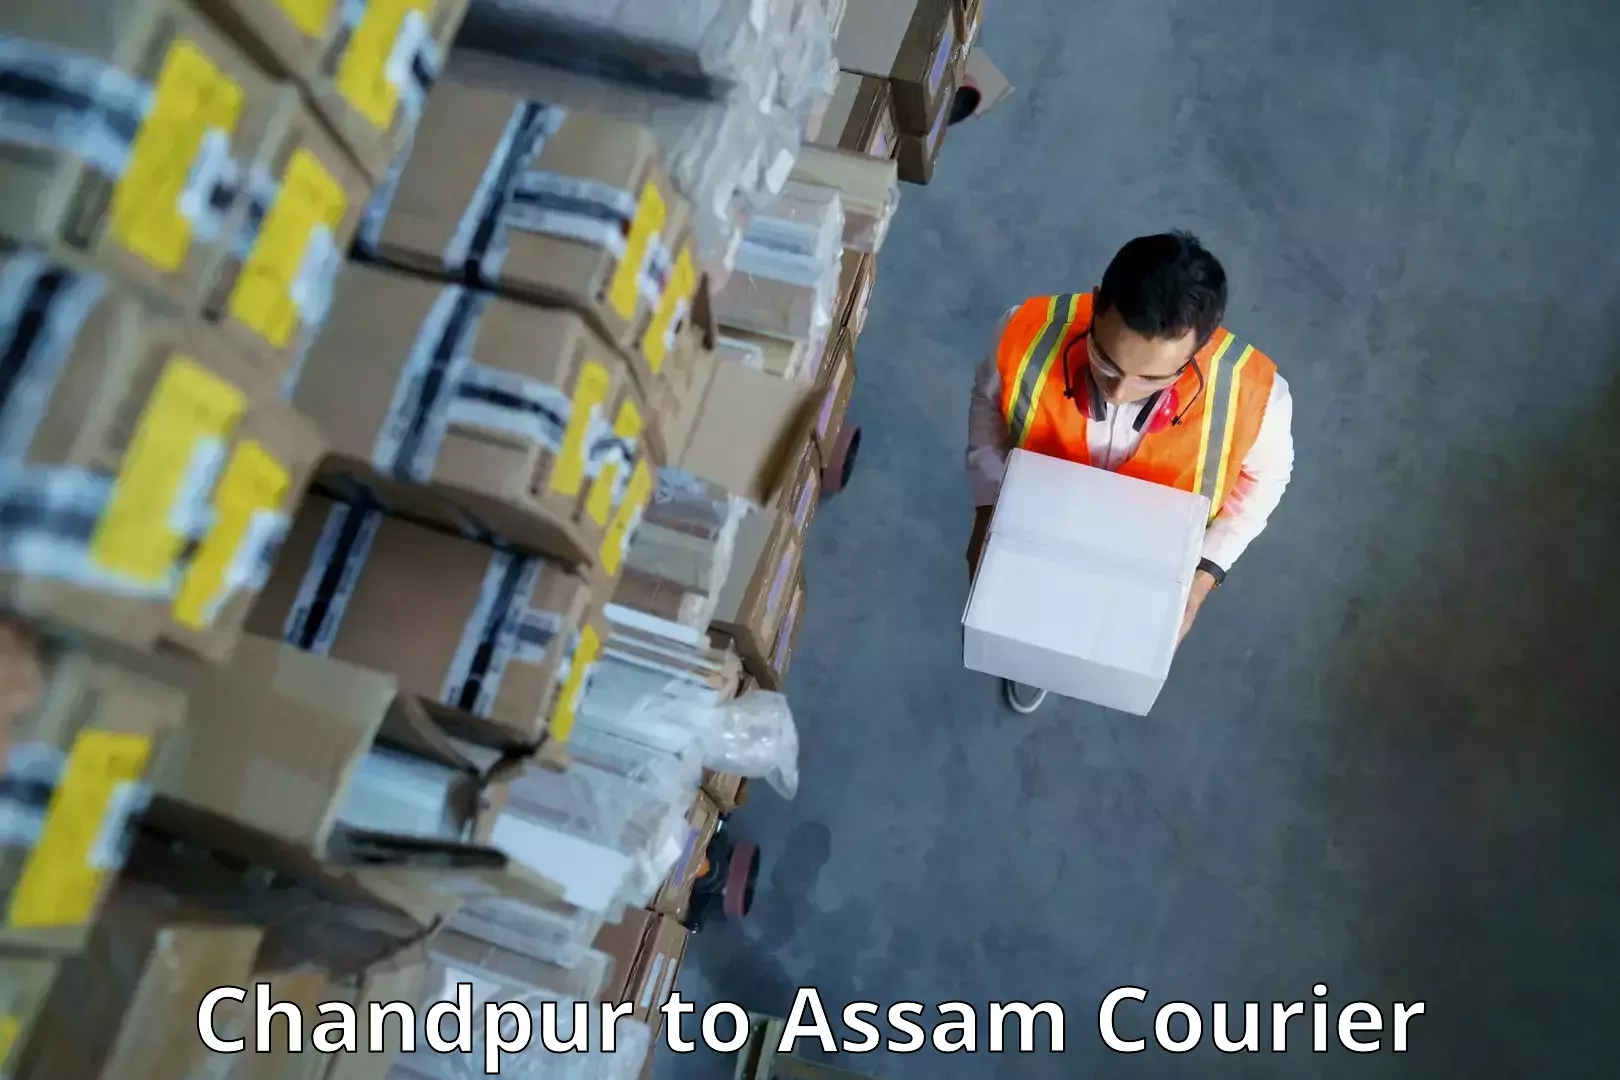 Cost-effective courier solutions Chandpur to Jorabat